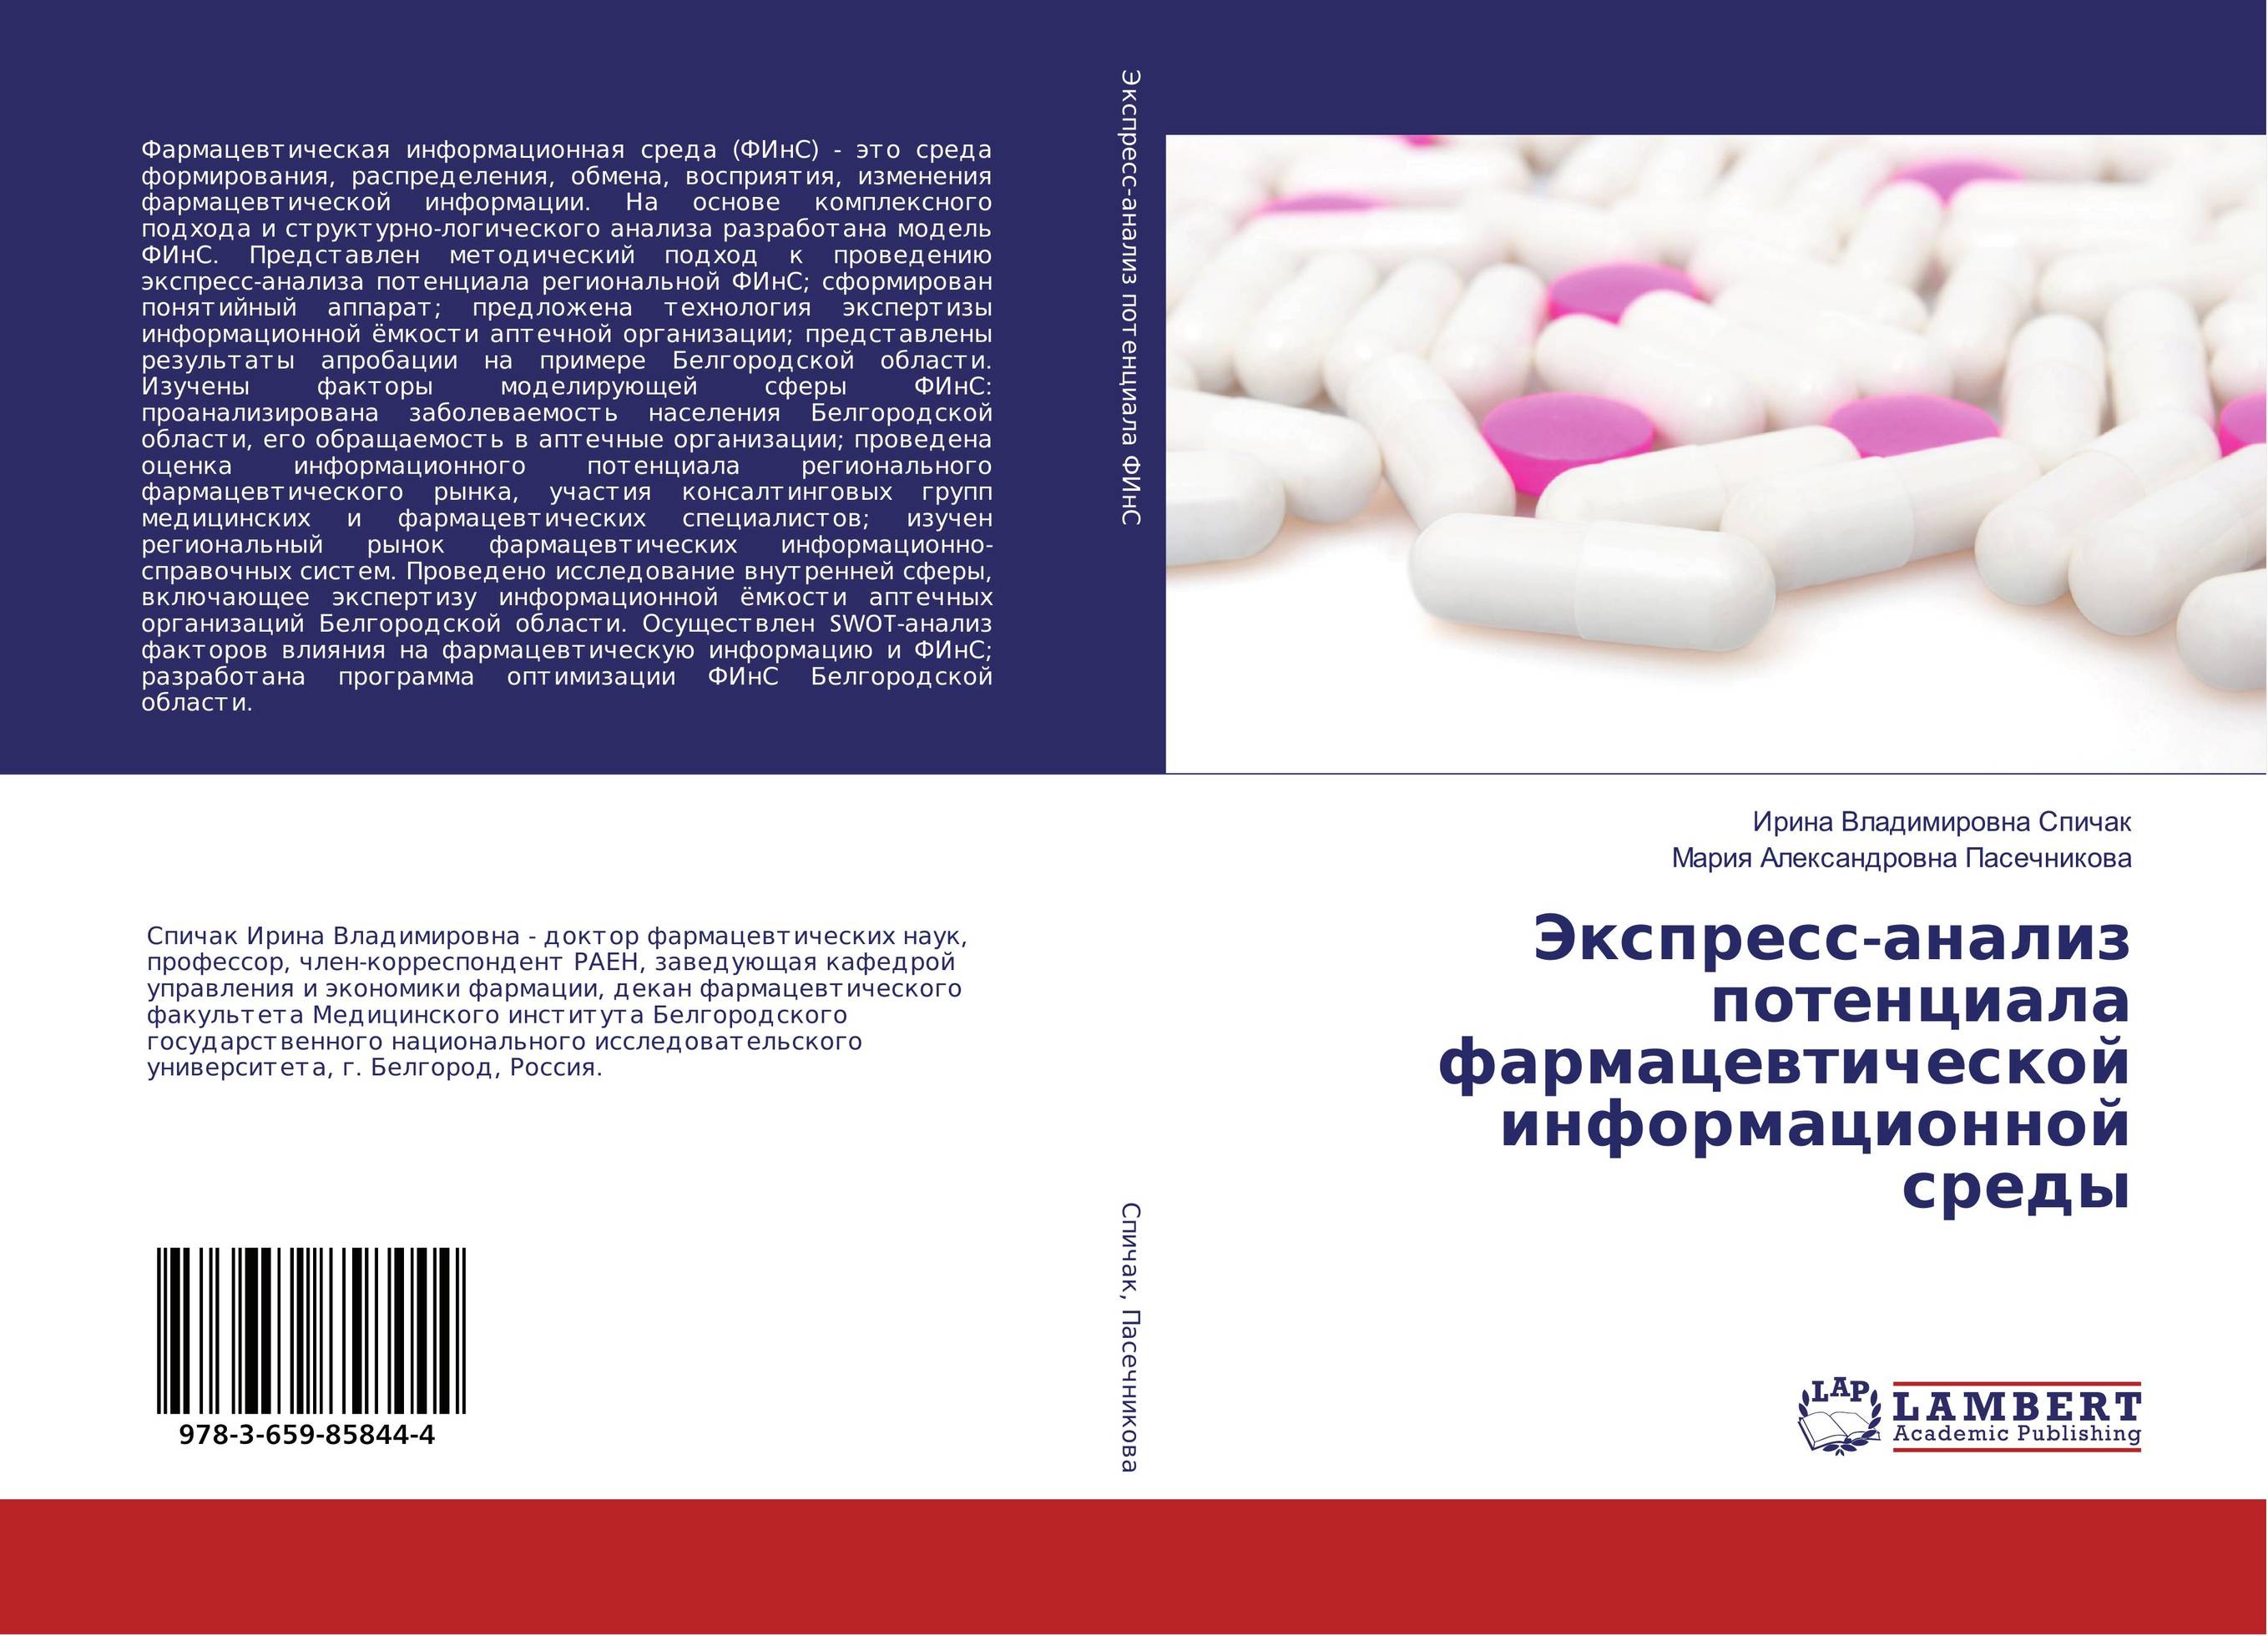 
        Экспресс-анализ потенциала фармацевтической информационной среды..
      